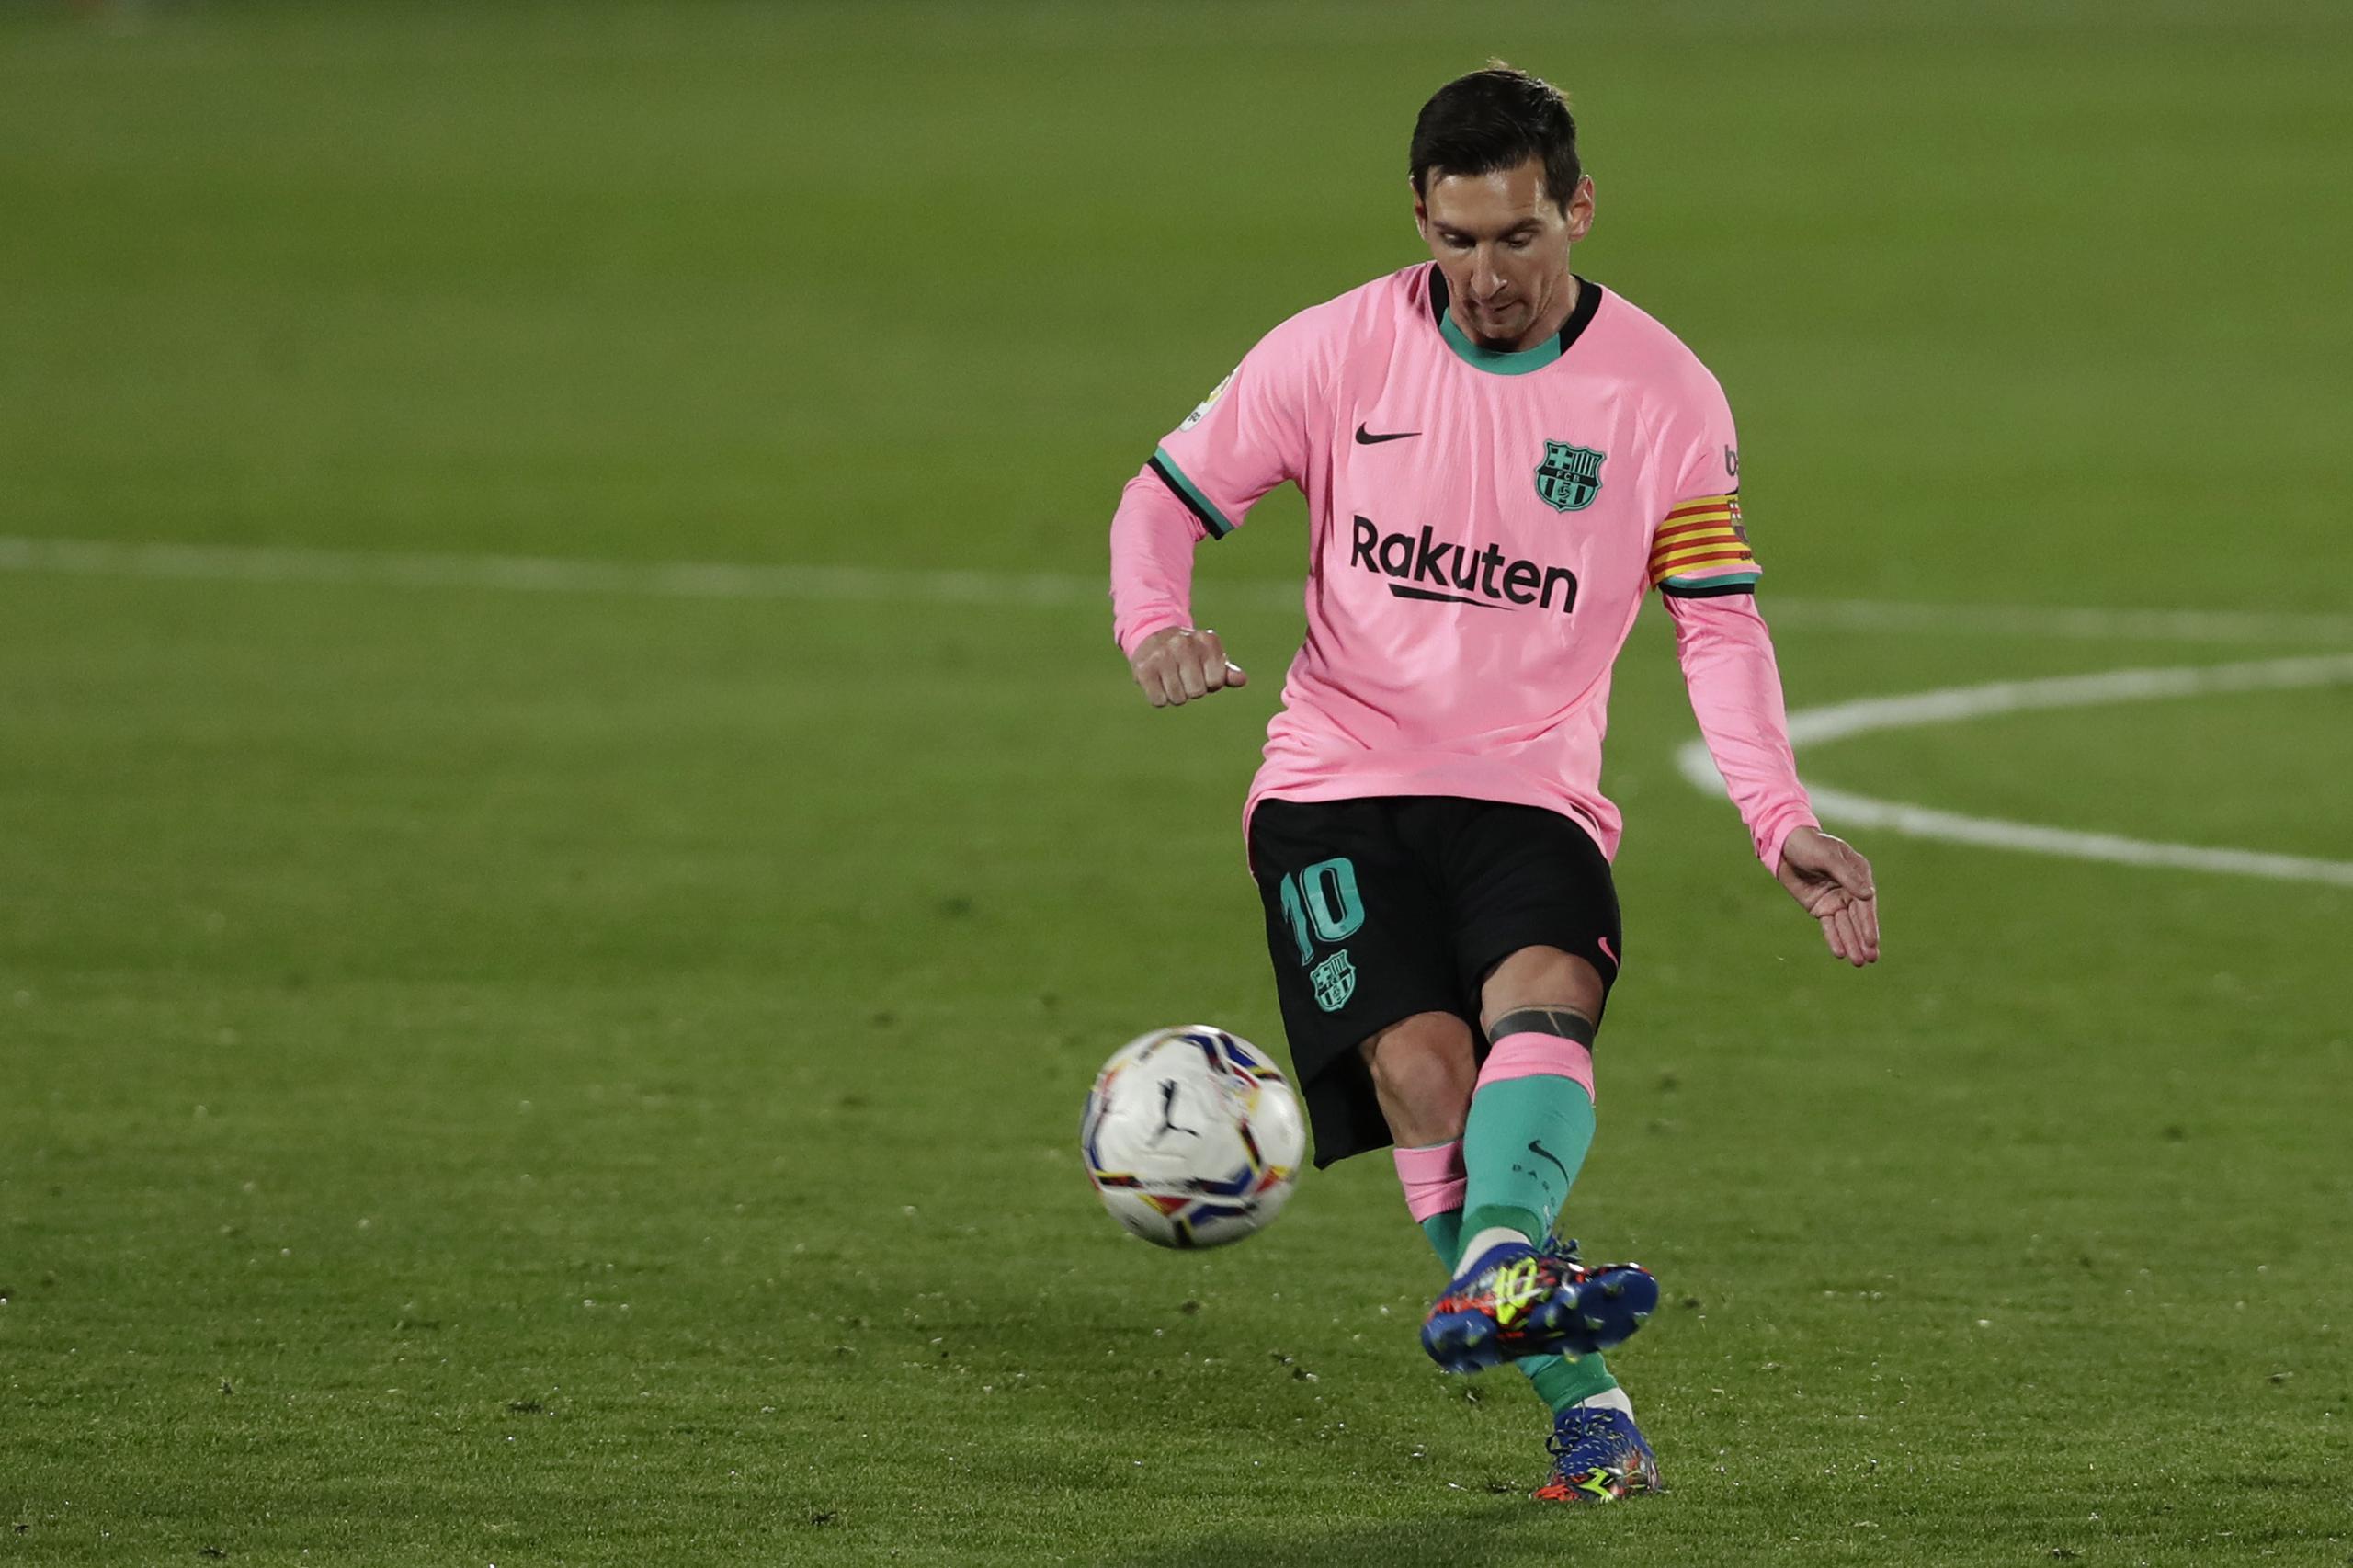 El delantero del Barcelona Lionel Messi remata el balón durante el partido contra Getafe por la Liga de España, el sábado 17 de octubre, en Getafe, España.